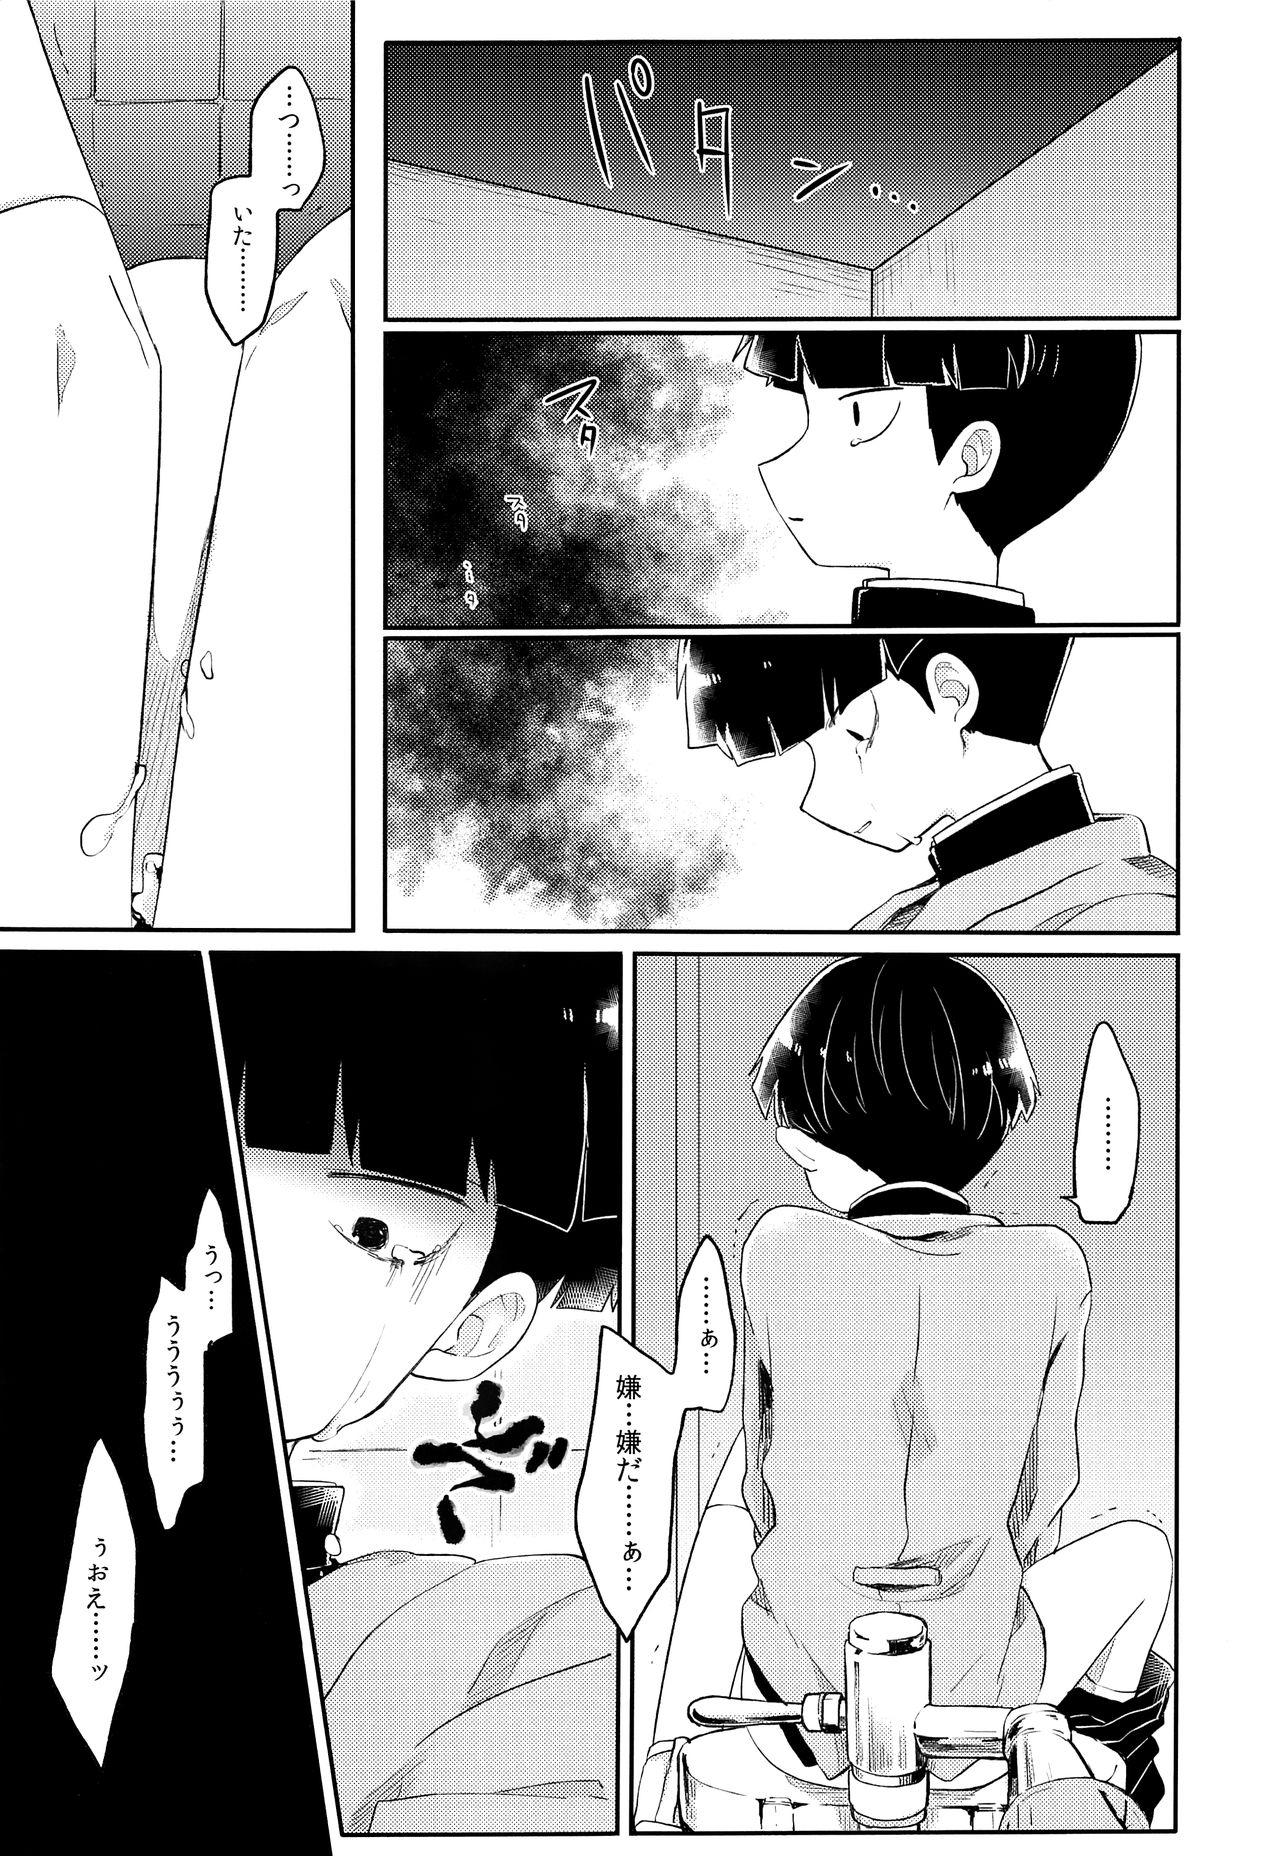 Dorm Itaike na Kimi Dakara - Mob psycho 100 Anime - Page 12